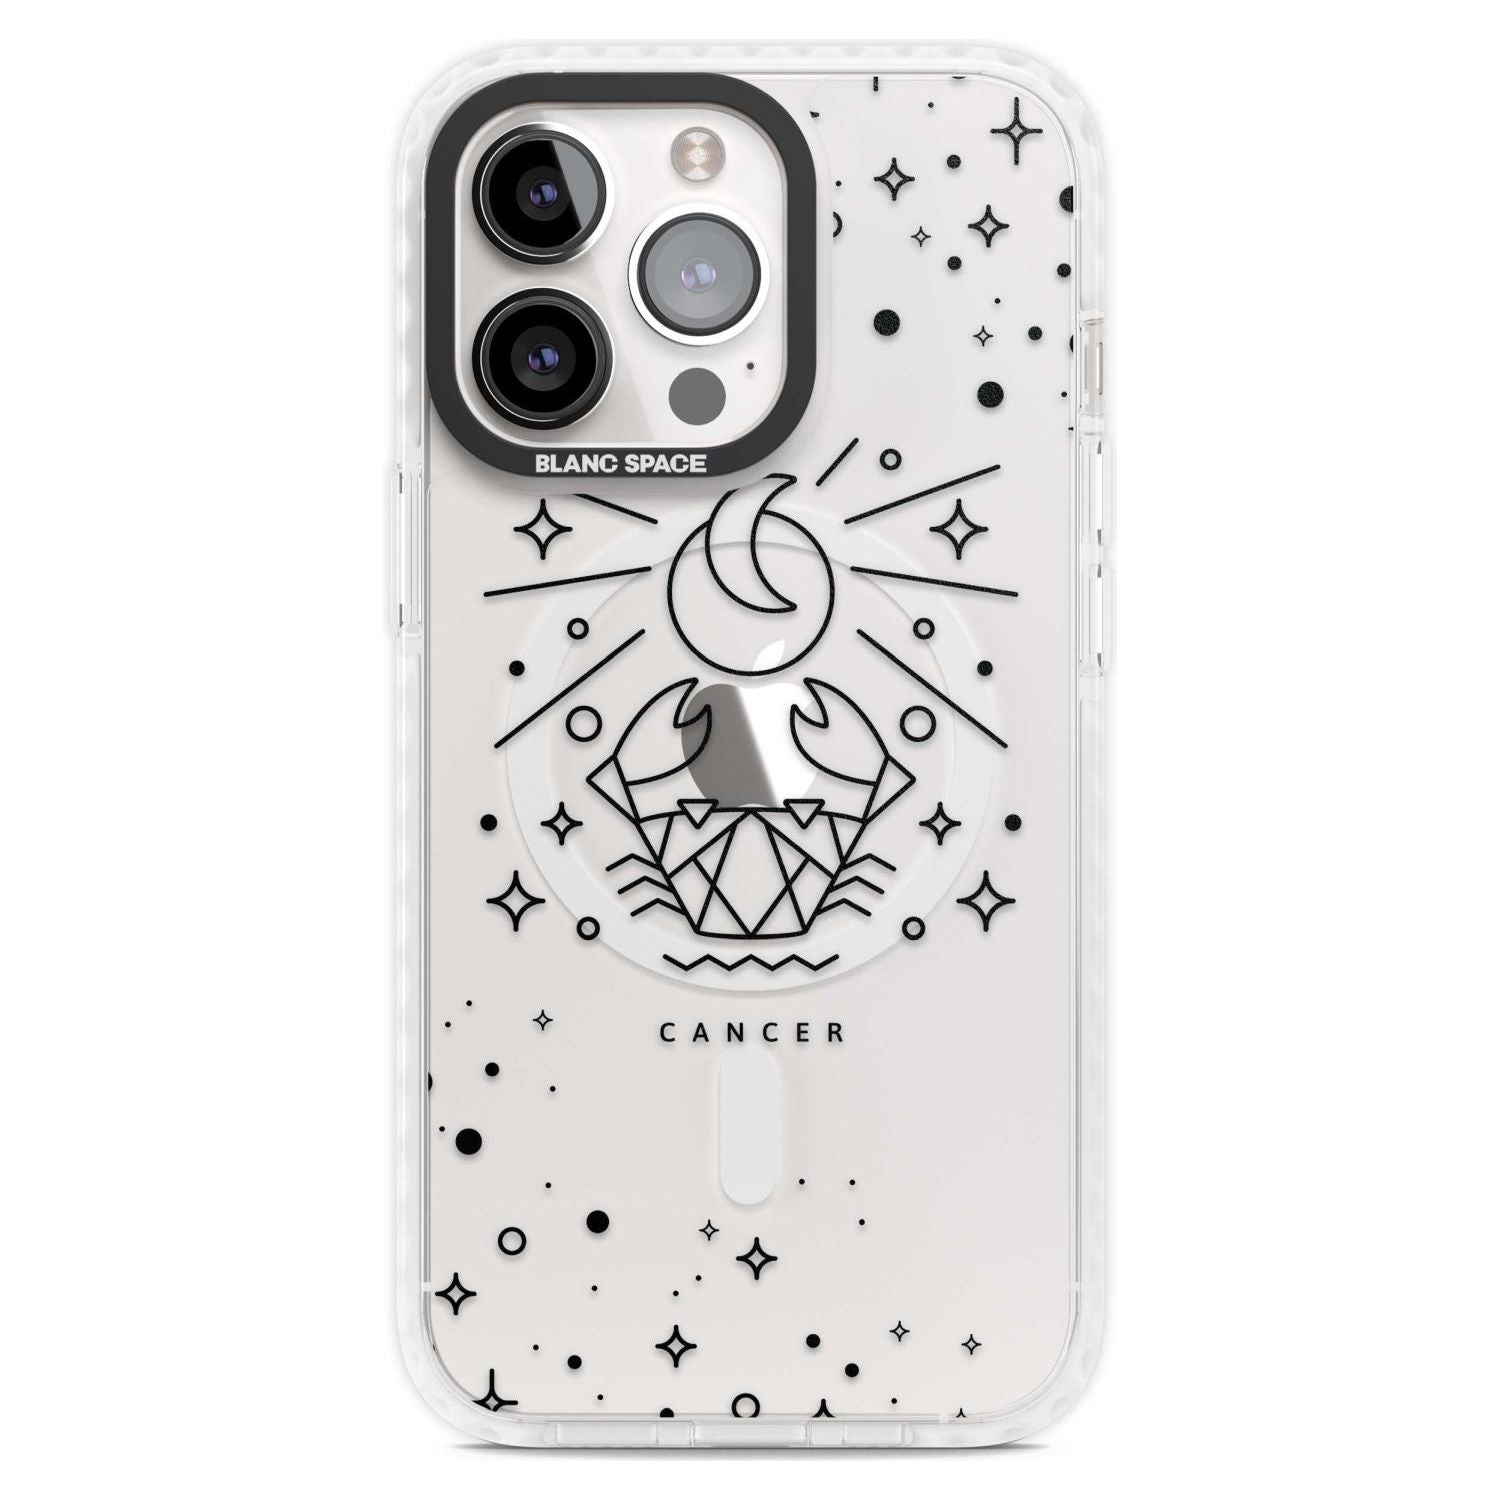 Cancer Emblem - Transparent Design Phone Case iPhone 15 Pro Max / Magsafe Impact Case,iPhone 15 Pro / Magsafe Impact Case Blanc Space